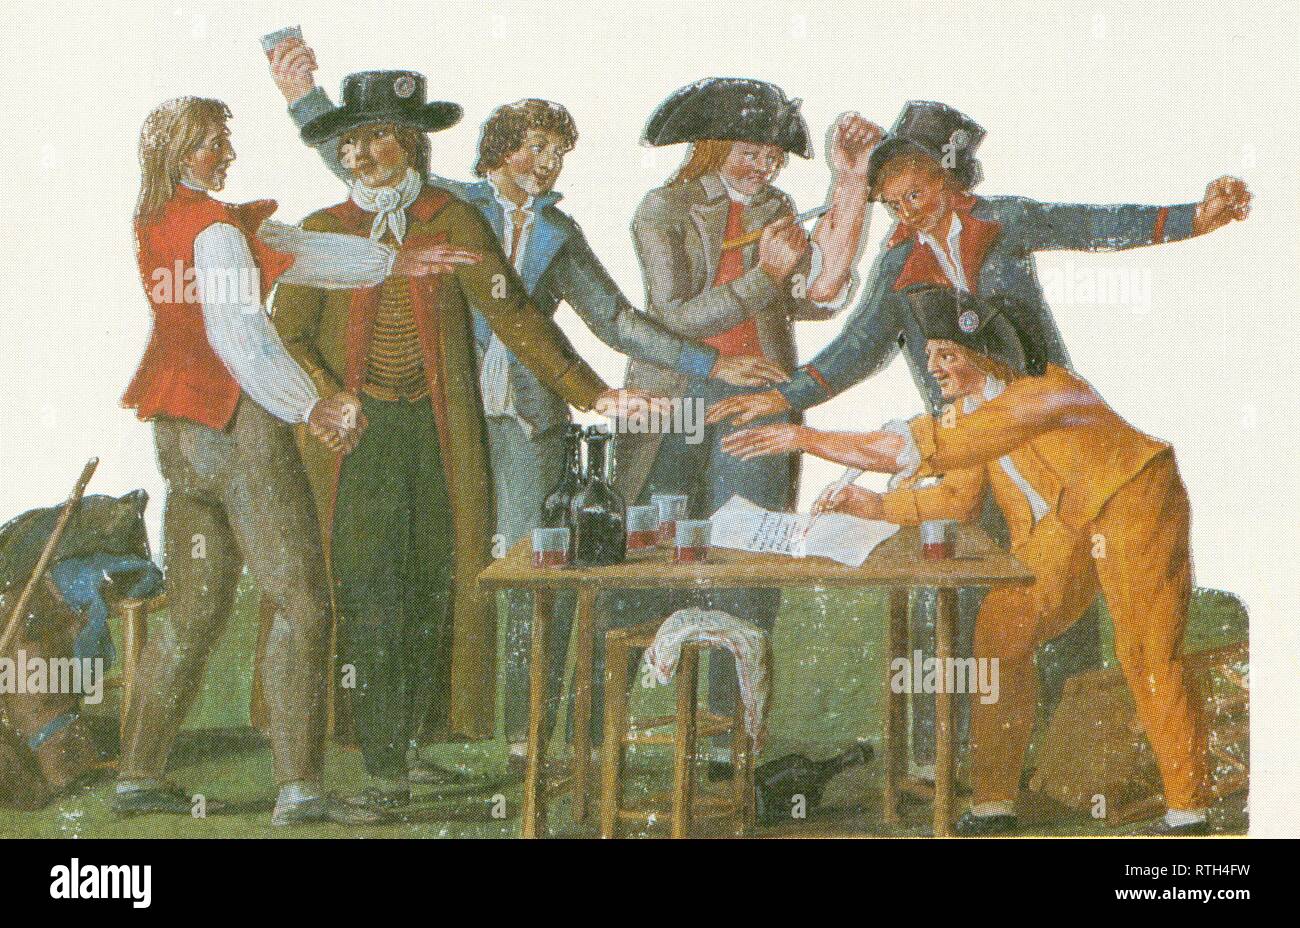 Les patriotes partent en guerre. Enrôlement des volontaires. Gravure en couleurs de LESUEUR. Juillet 1792. Stock Photo